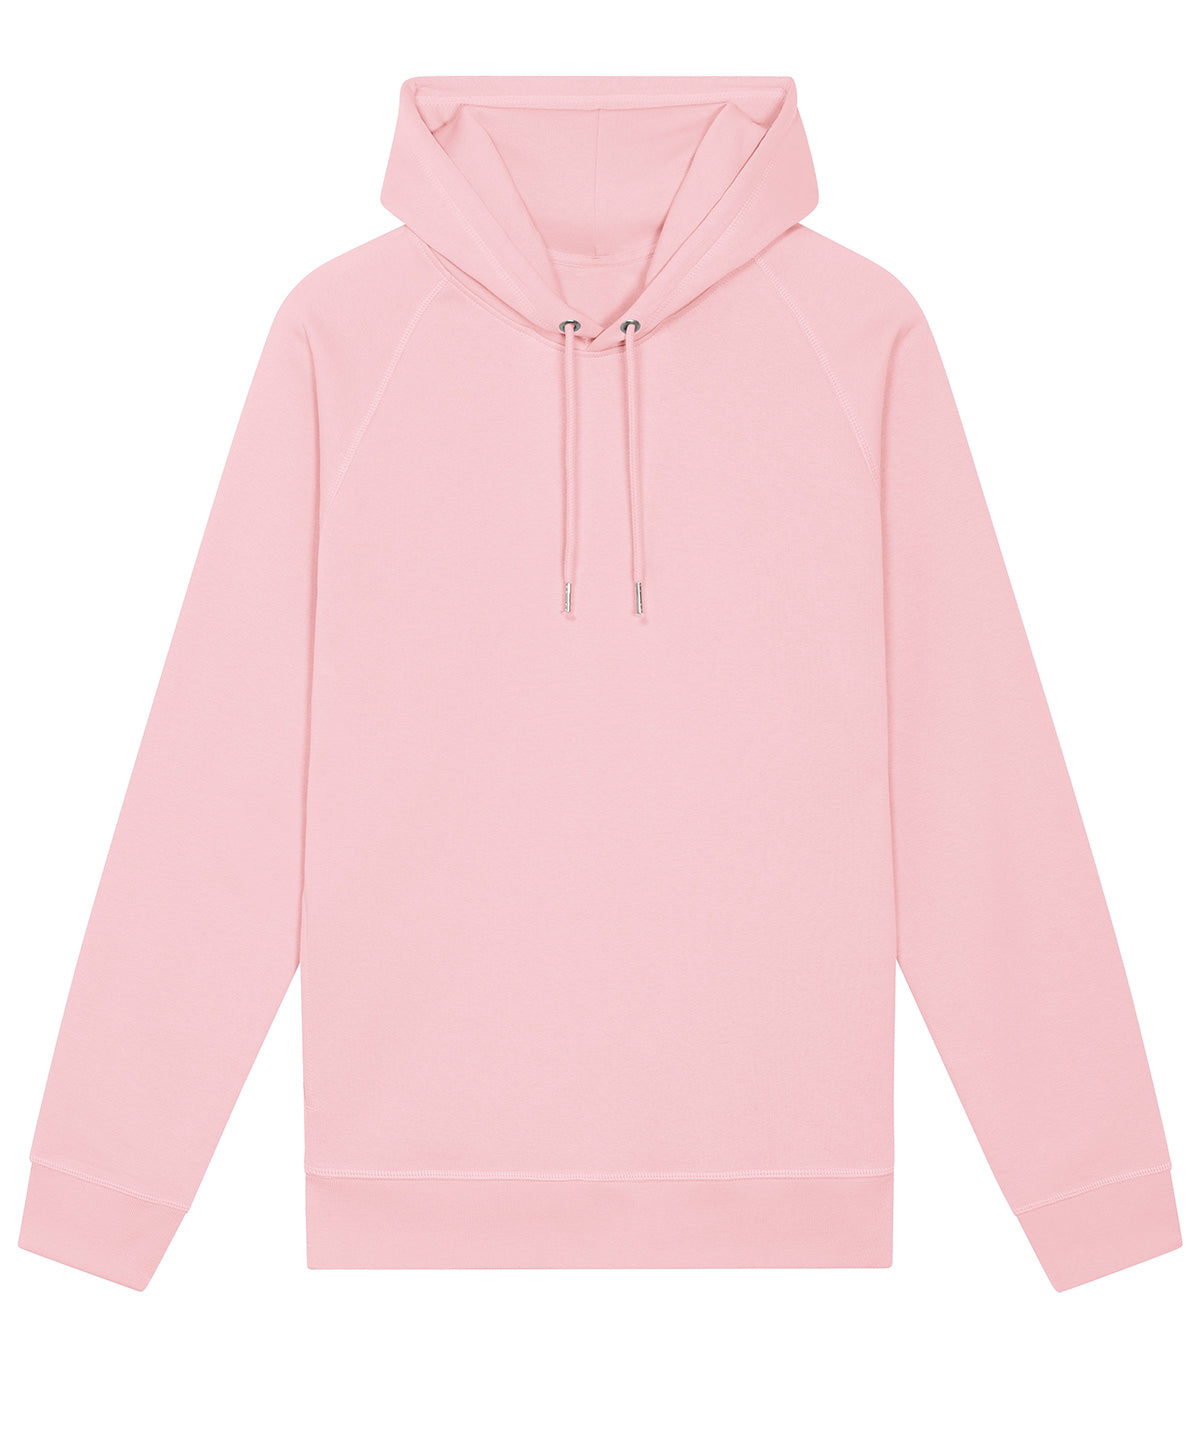 Personalised Hoodies - Dark Grey Stanley/Stella Sider unisex side pocket hoodie  (STSU824)